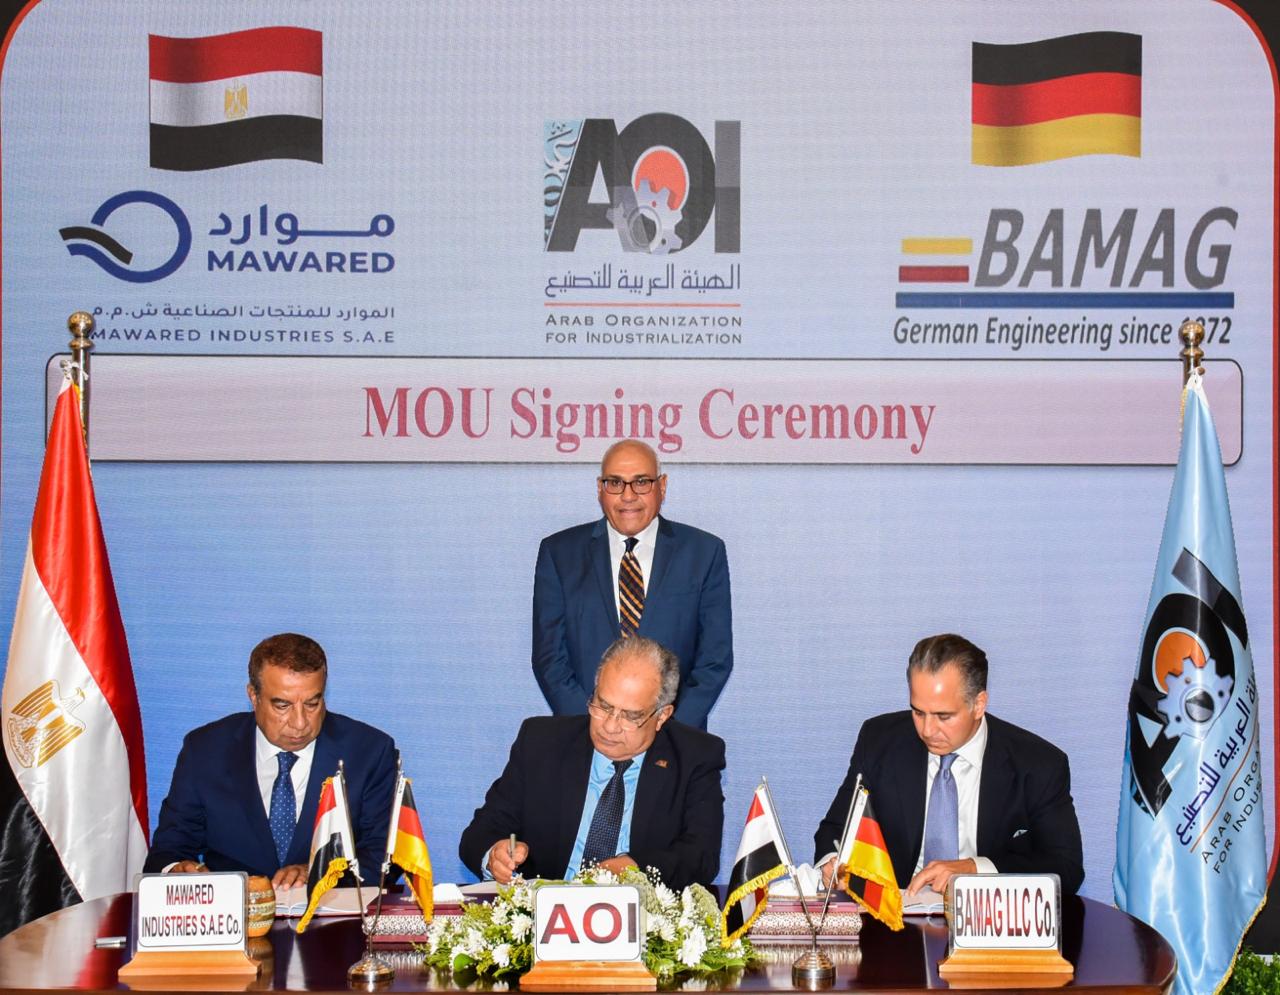 تعزيز التعاون بين الهيئة العربية للتصنيع وكبري الشركات الألمانية  في مجال معالجة وتنقية وتحلية المياه